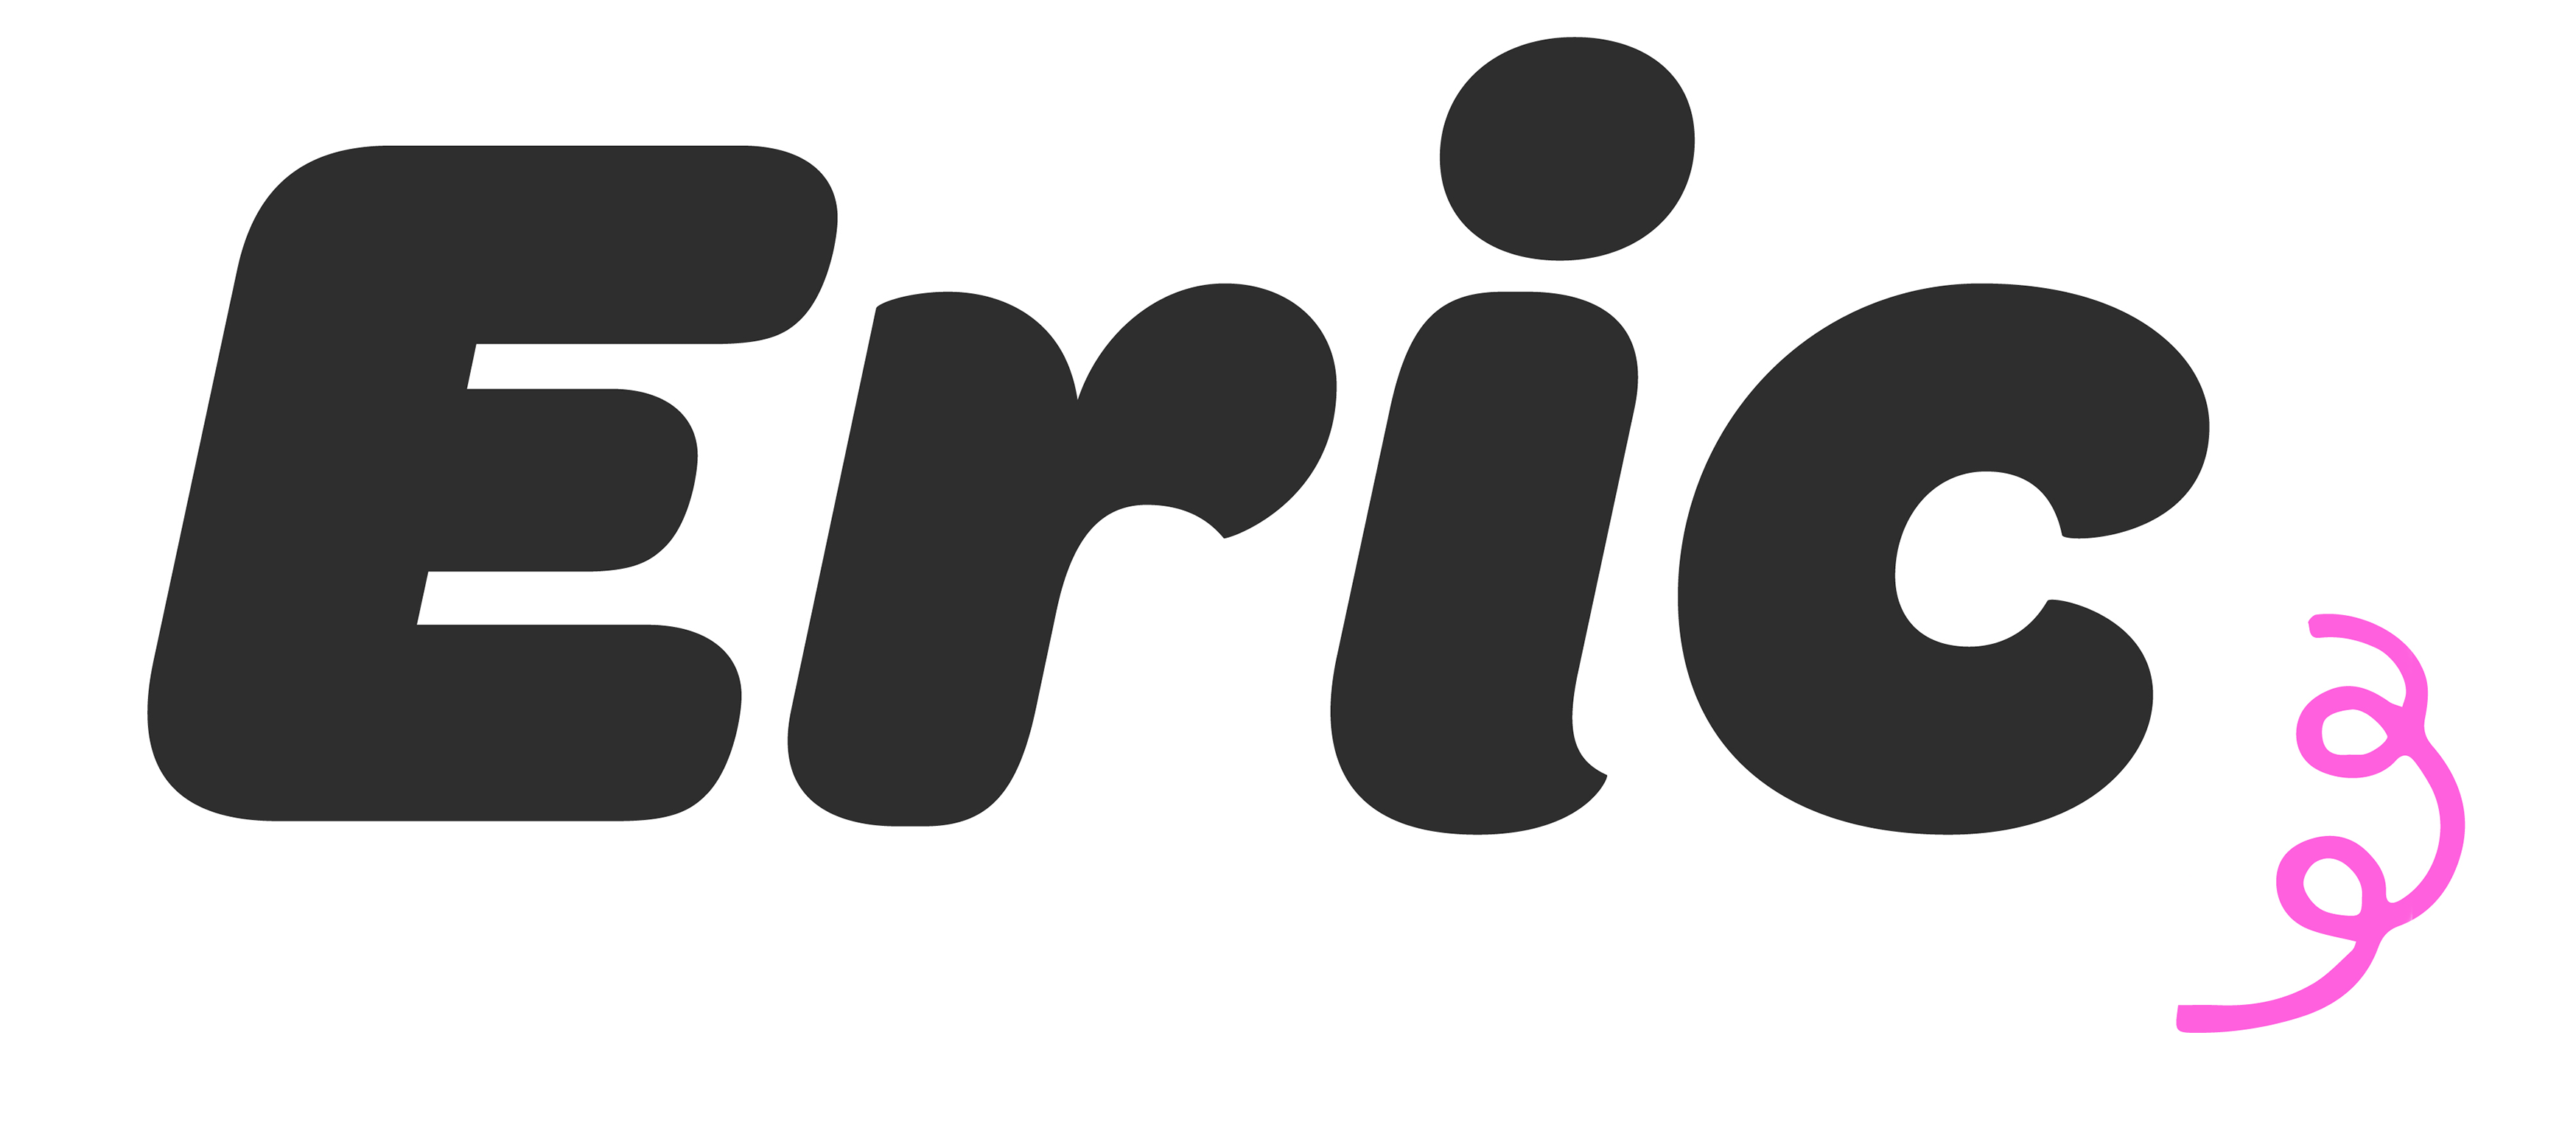 Eric Logo - Eric Makes Things